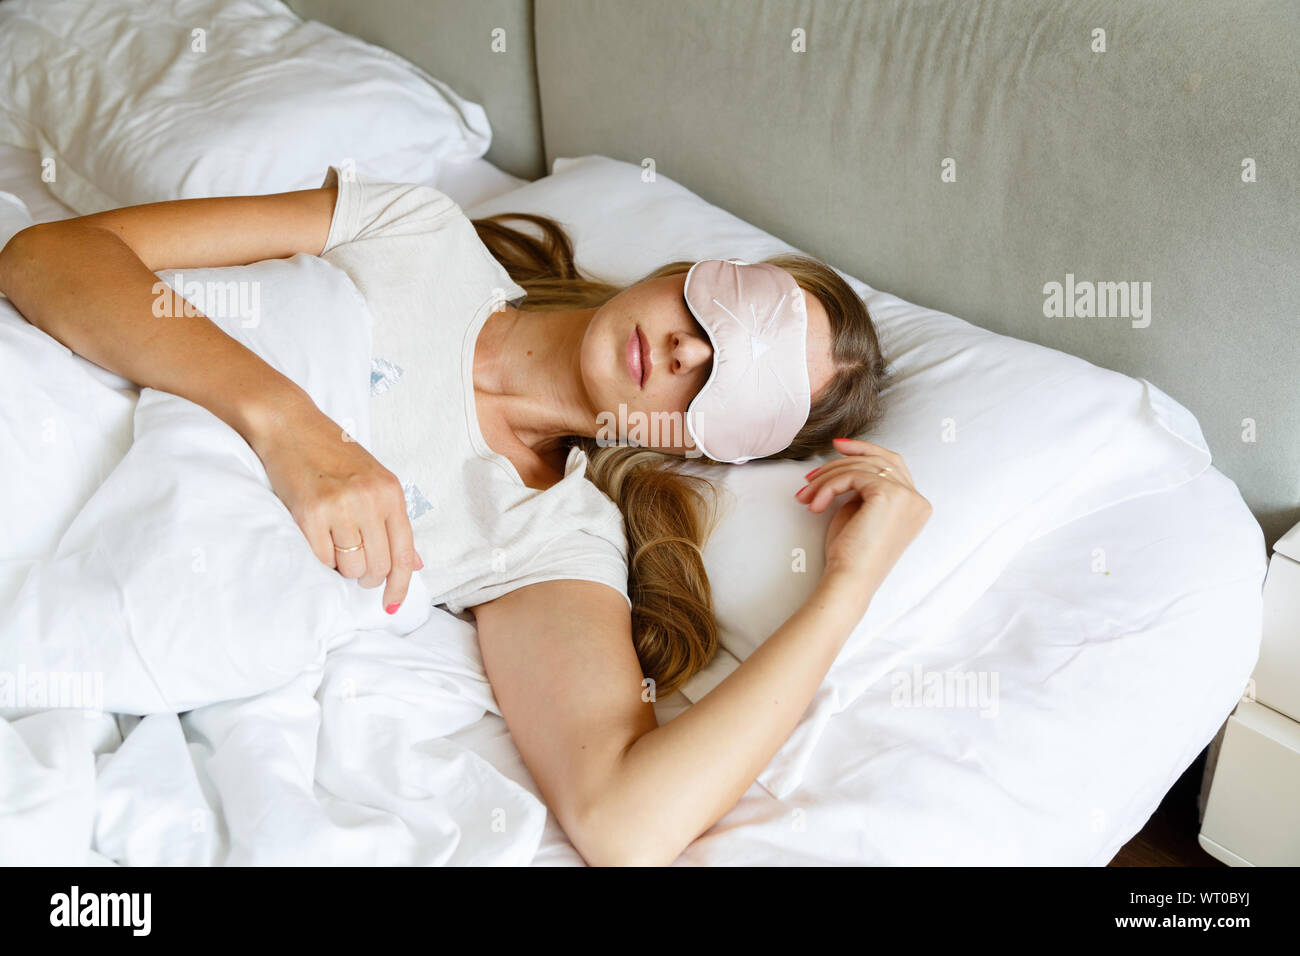 Mujer joven con largo pelo rubio duerme en una cama cómoda en una máscara para dormir. Venda en el ojo. Mañana en casa. Una almohada y una manta blanca Foto de stock